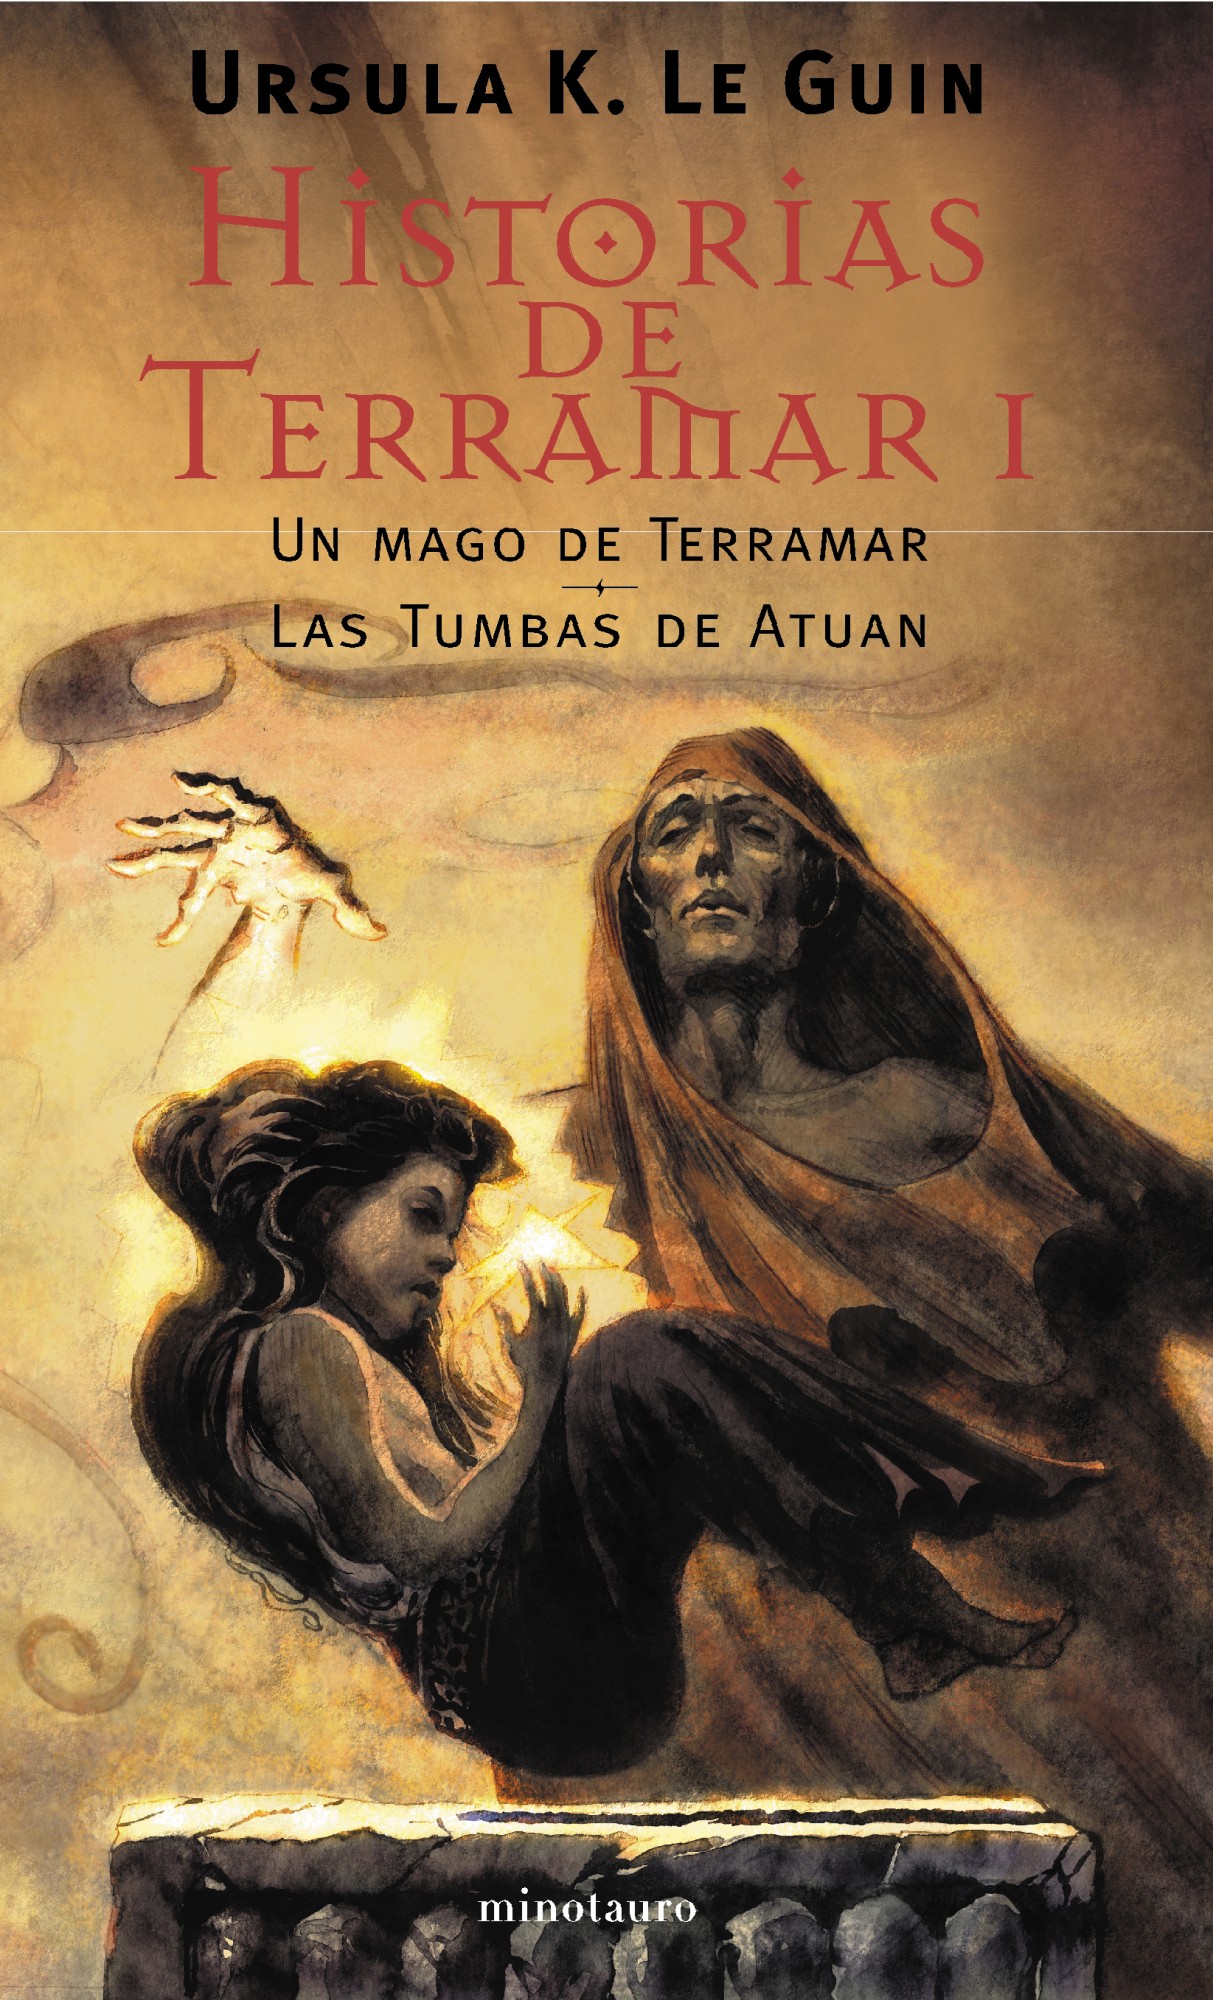 Libro de audio Historias de Terramar [1] – Ursula K. Le Guin